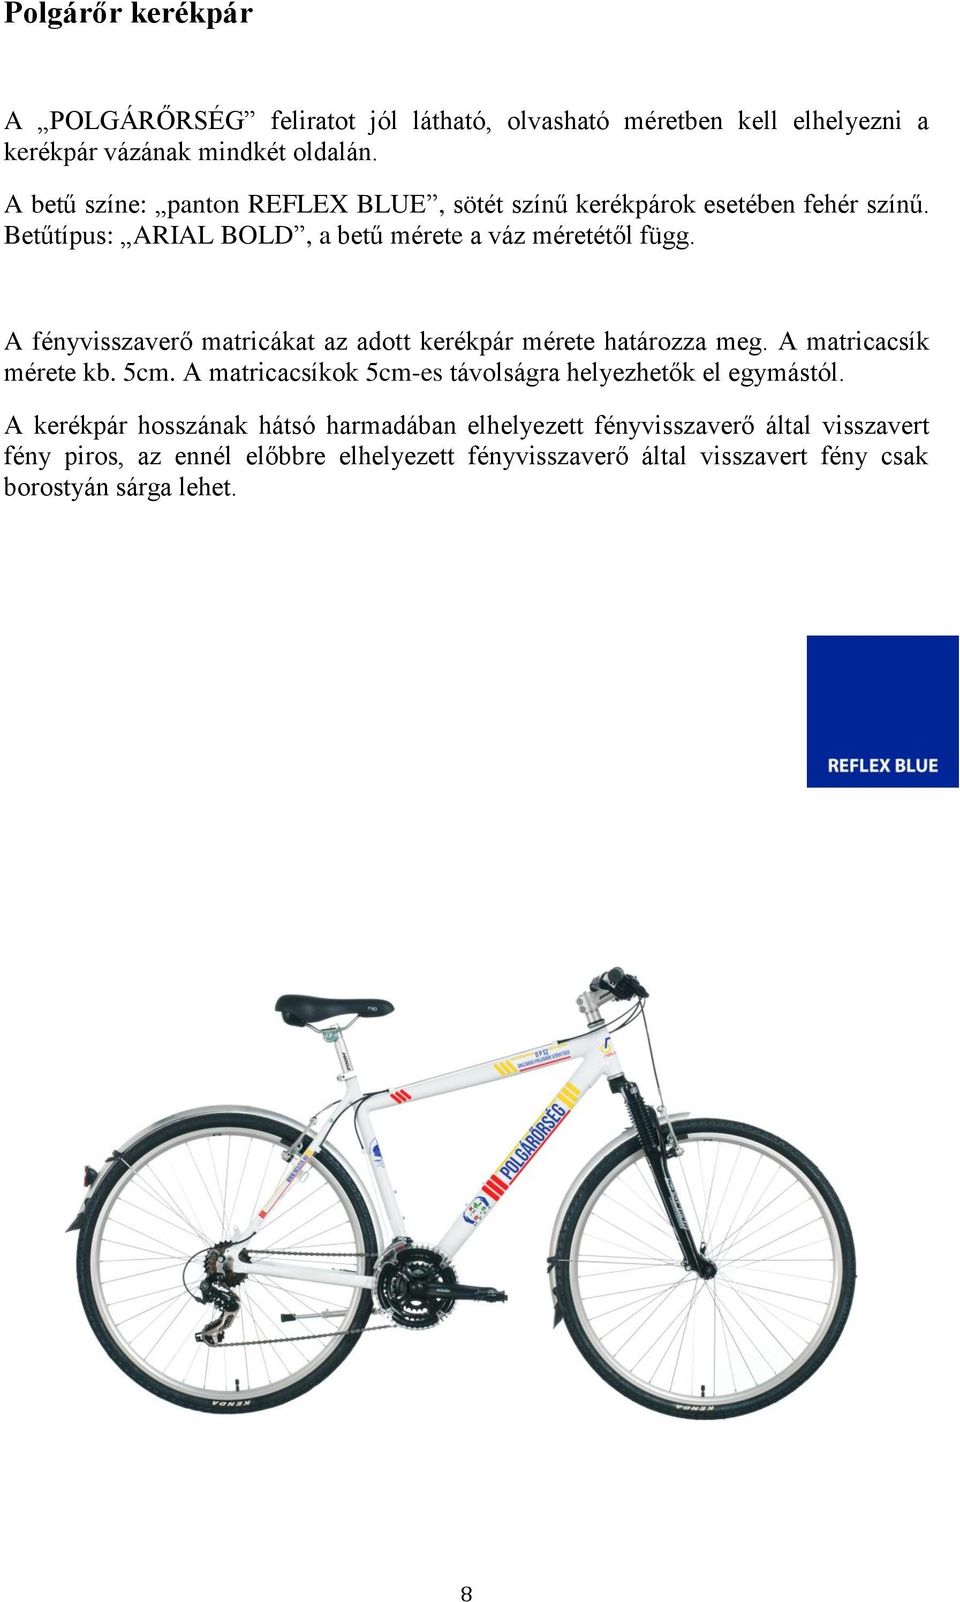 A fényvisszaverő matricákat az adott kerékpár mérete határozza meg. A matricacsík mérete kb. 5cm.